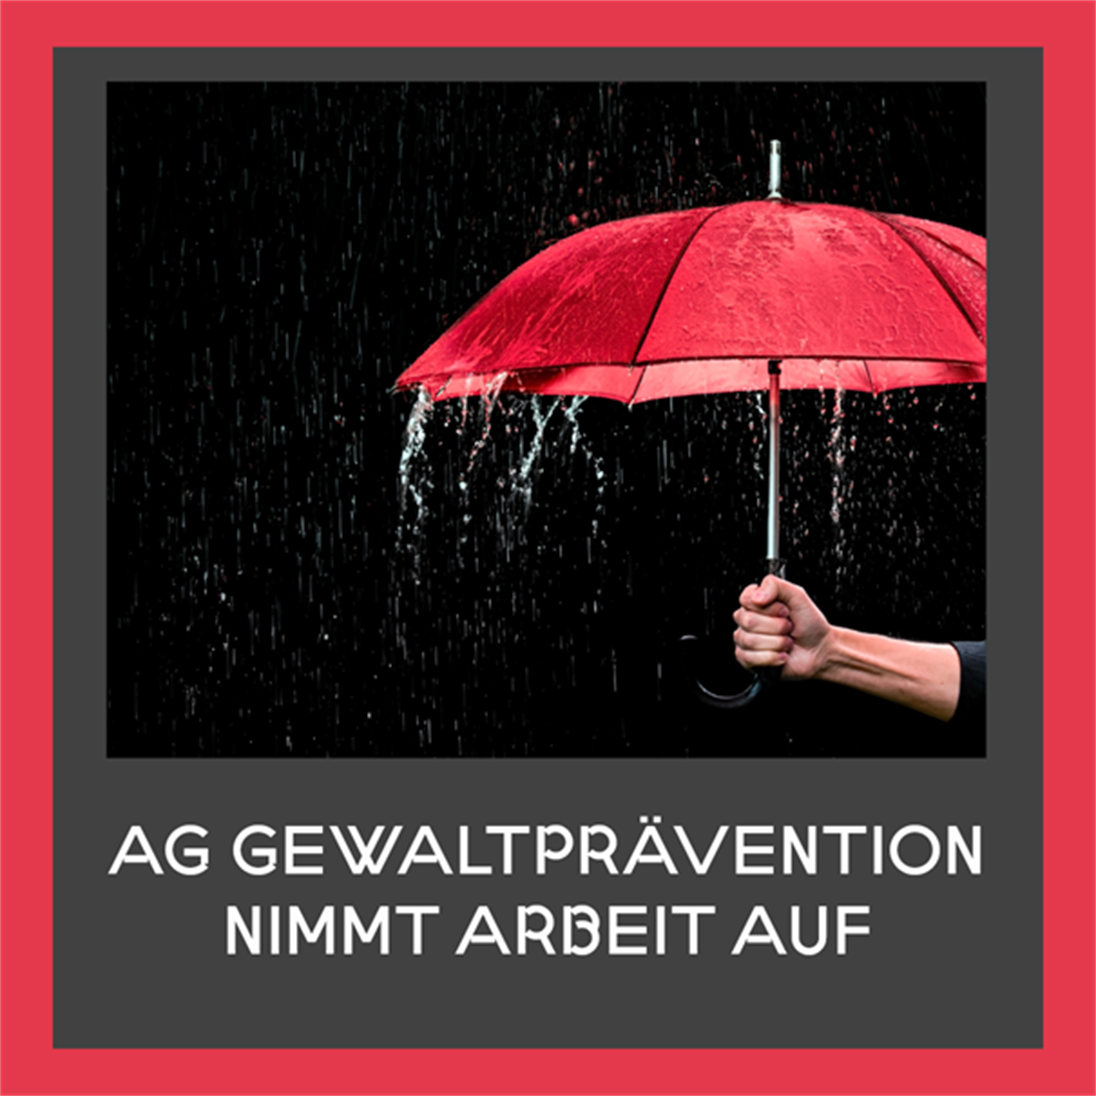 Roter Regenschirm, Regen und Schriftzug: AG Gewaltprävention nimmt Arbeit auf